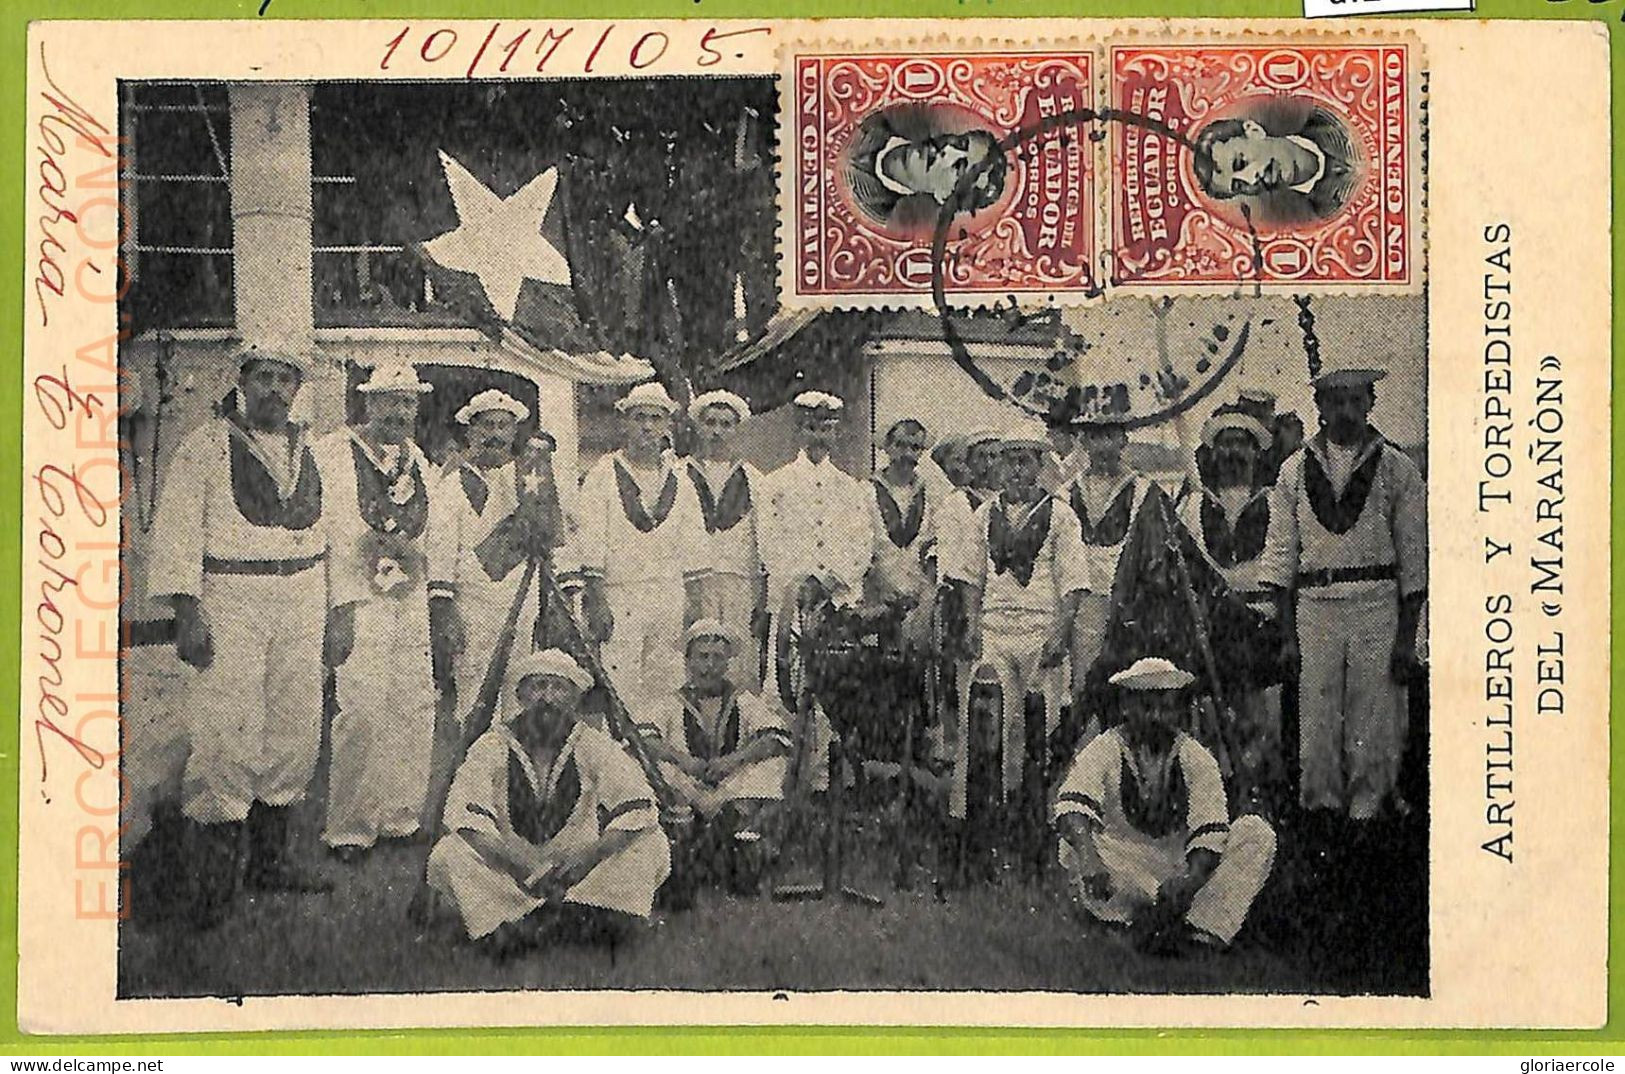 Af2442 - ECUADOR - Vintage Postcard - Ethnic - 1905 - Ecuador